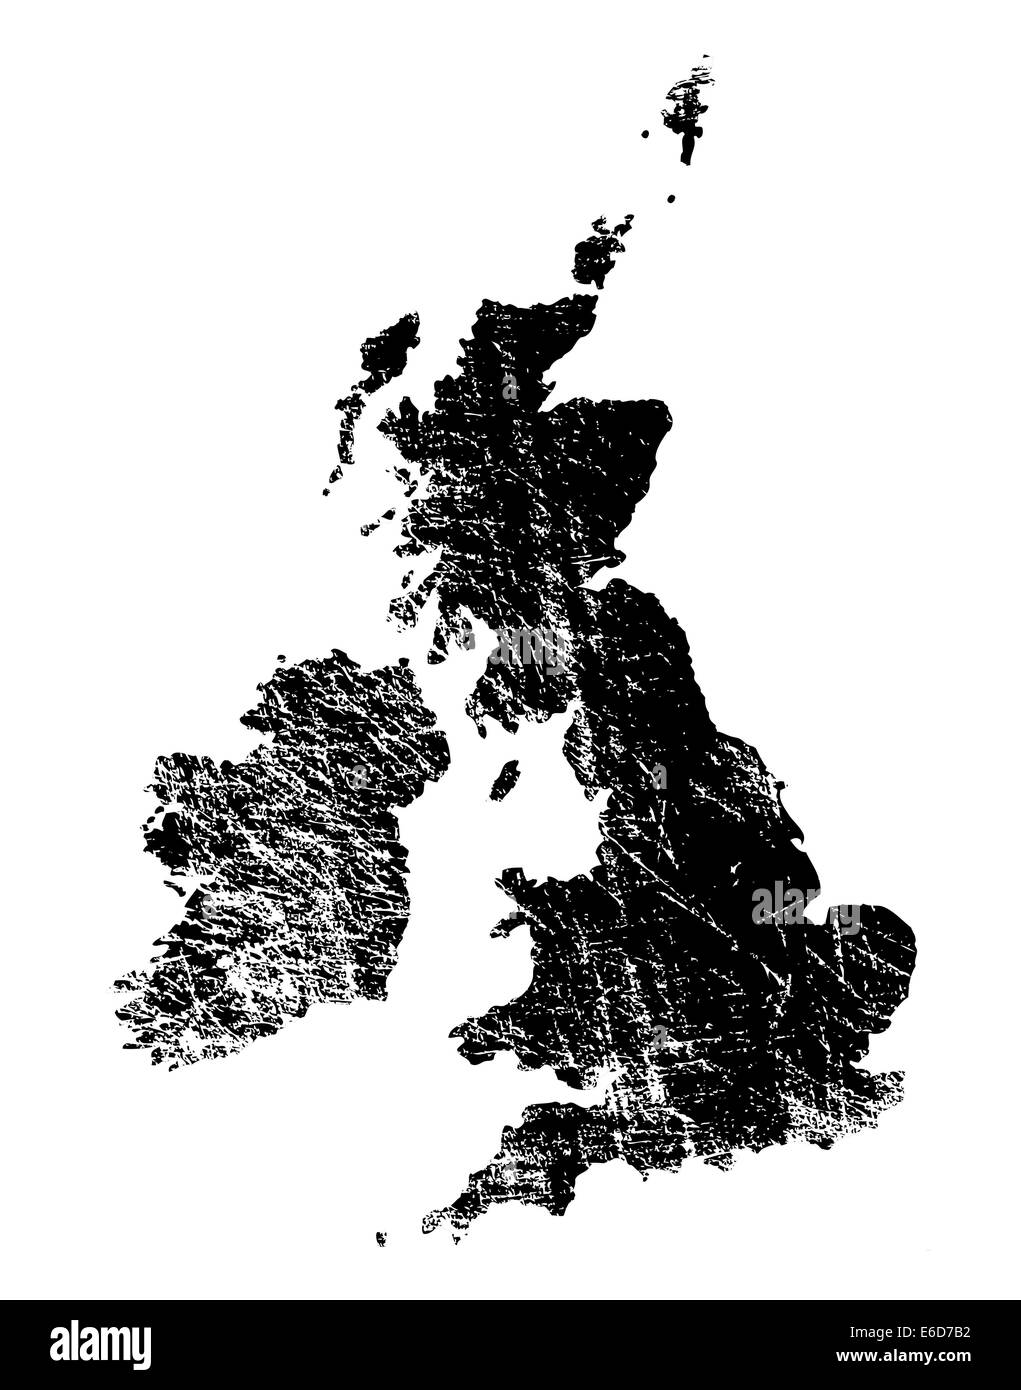 Aperçu de la Grande-Bretagne et d'Irlande avec heavy grunge Illustration de Vecteur